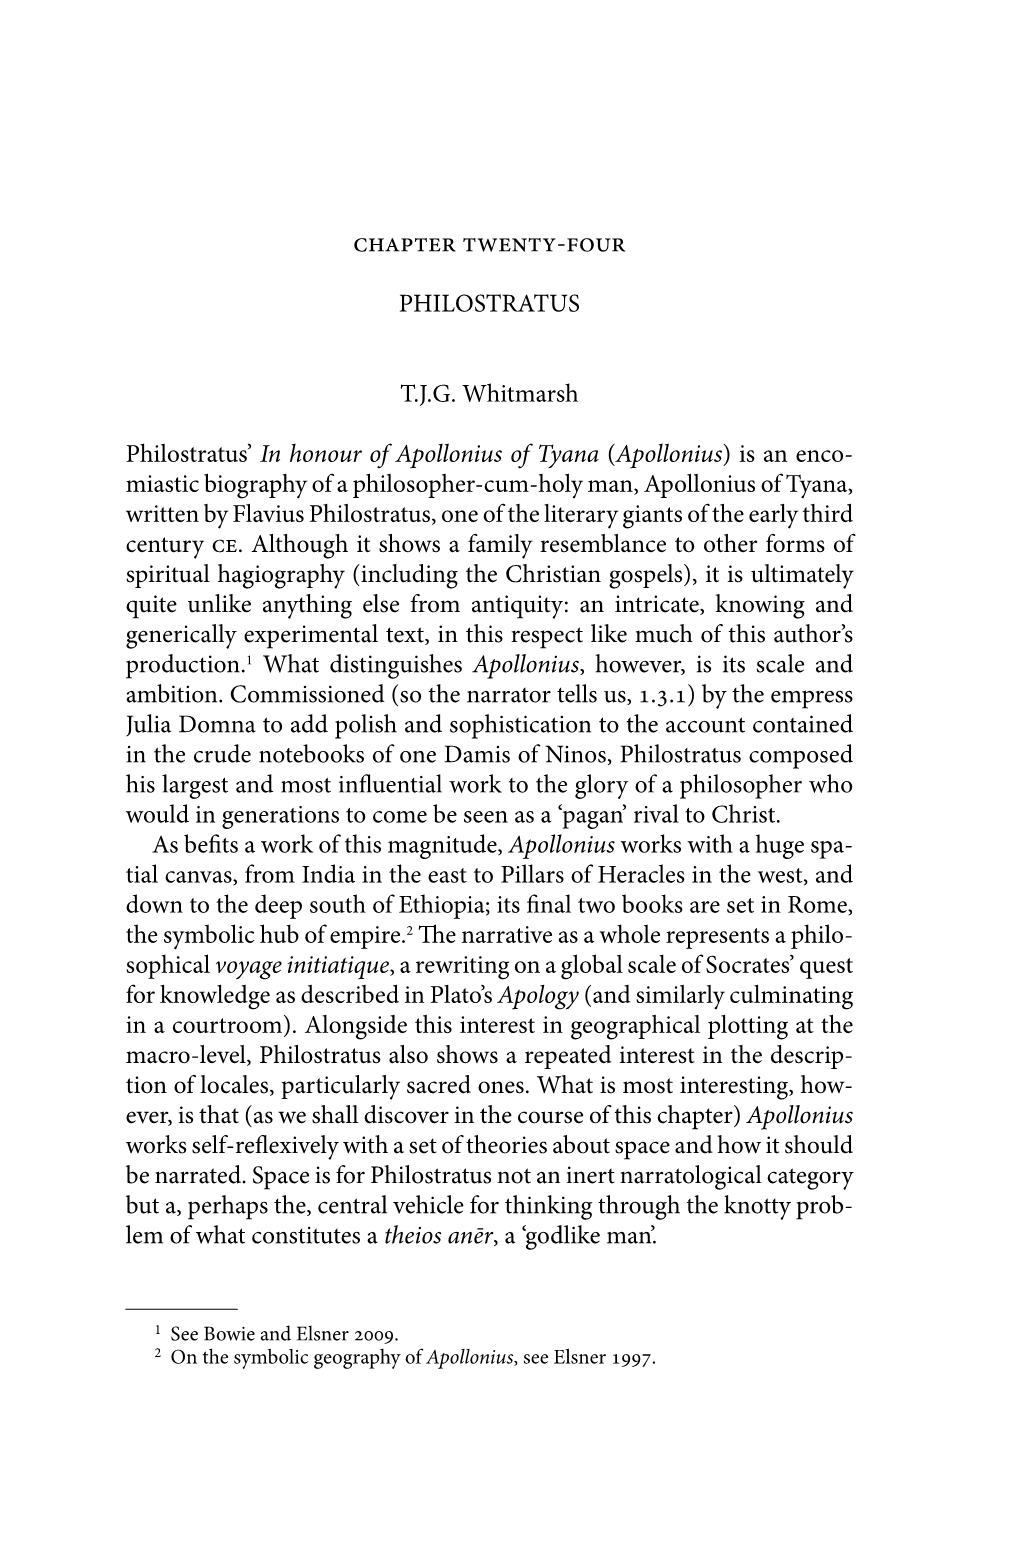 PHILOSTRATUS T.J.G. Whitmarsh Philostratus' in Honour of Apollonius